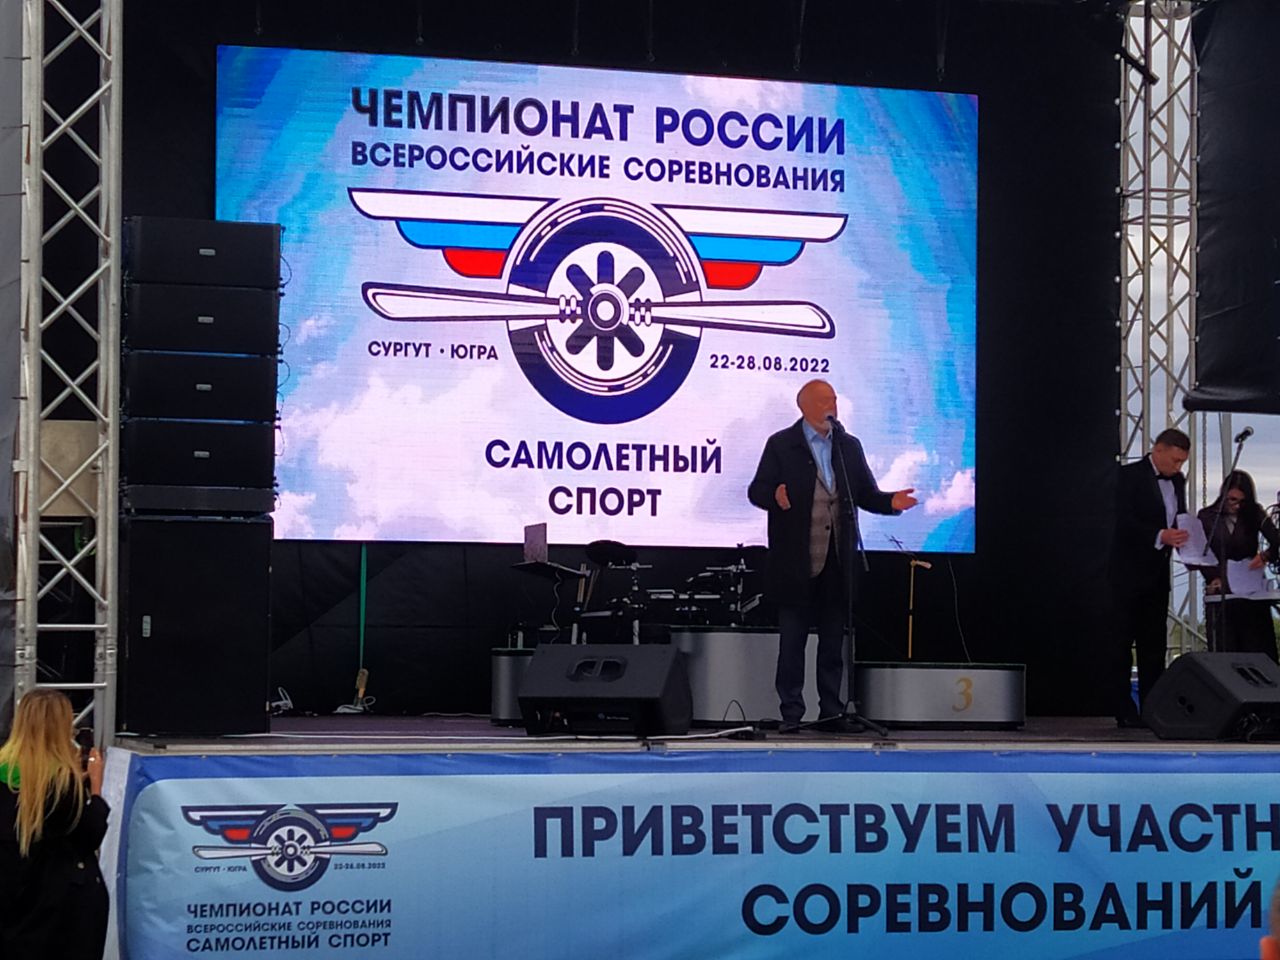 Посещение Чемпионата и всероссийских соревнований по самолетному спорту.